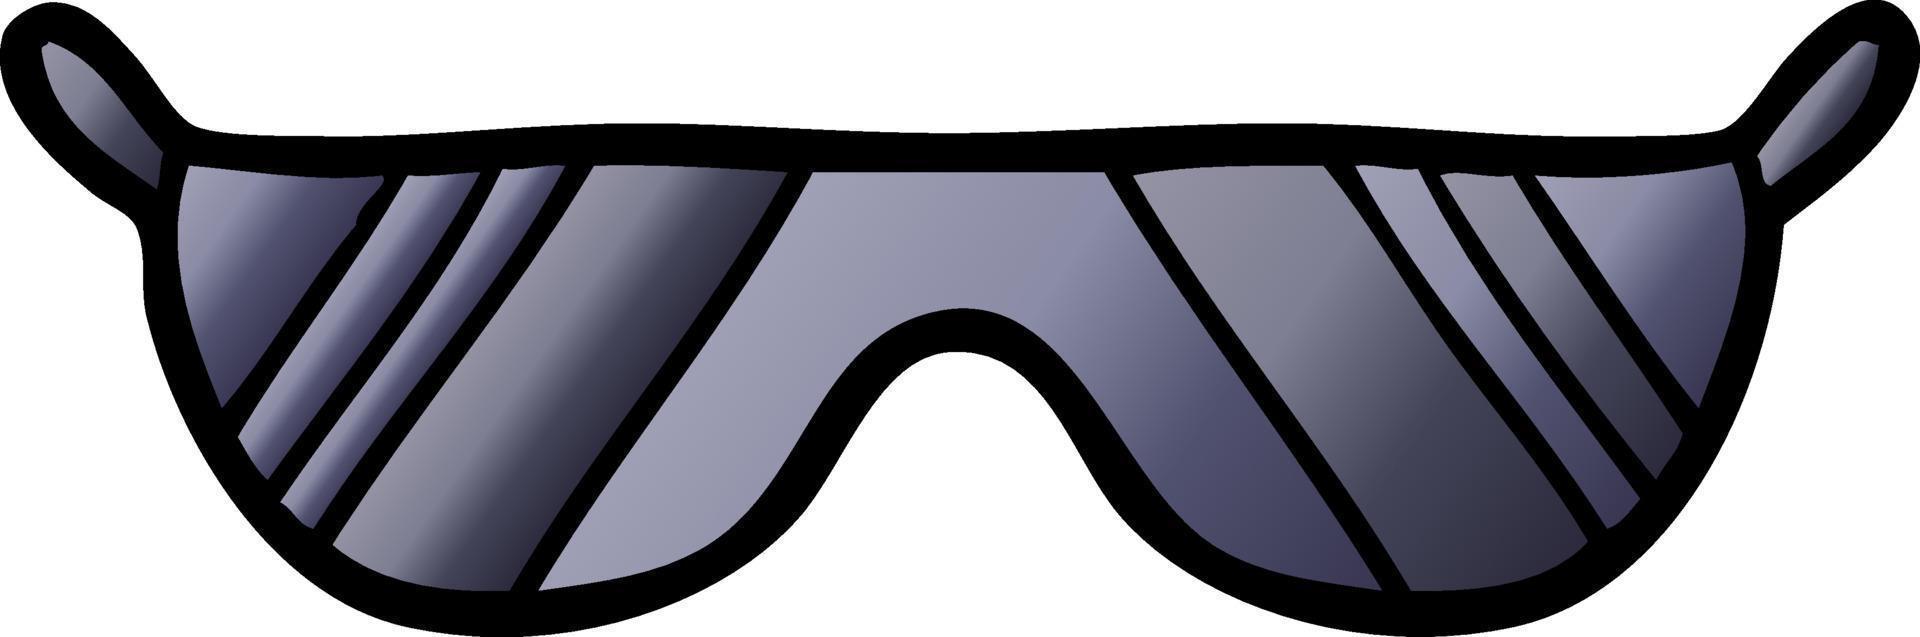 Cartoon cute sunglasses vector